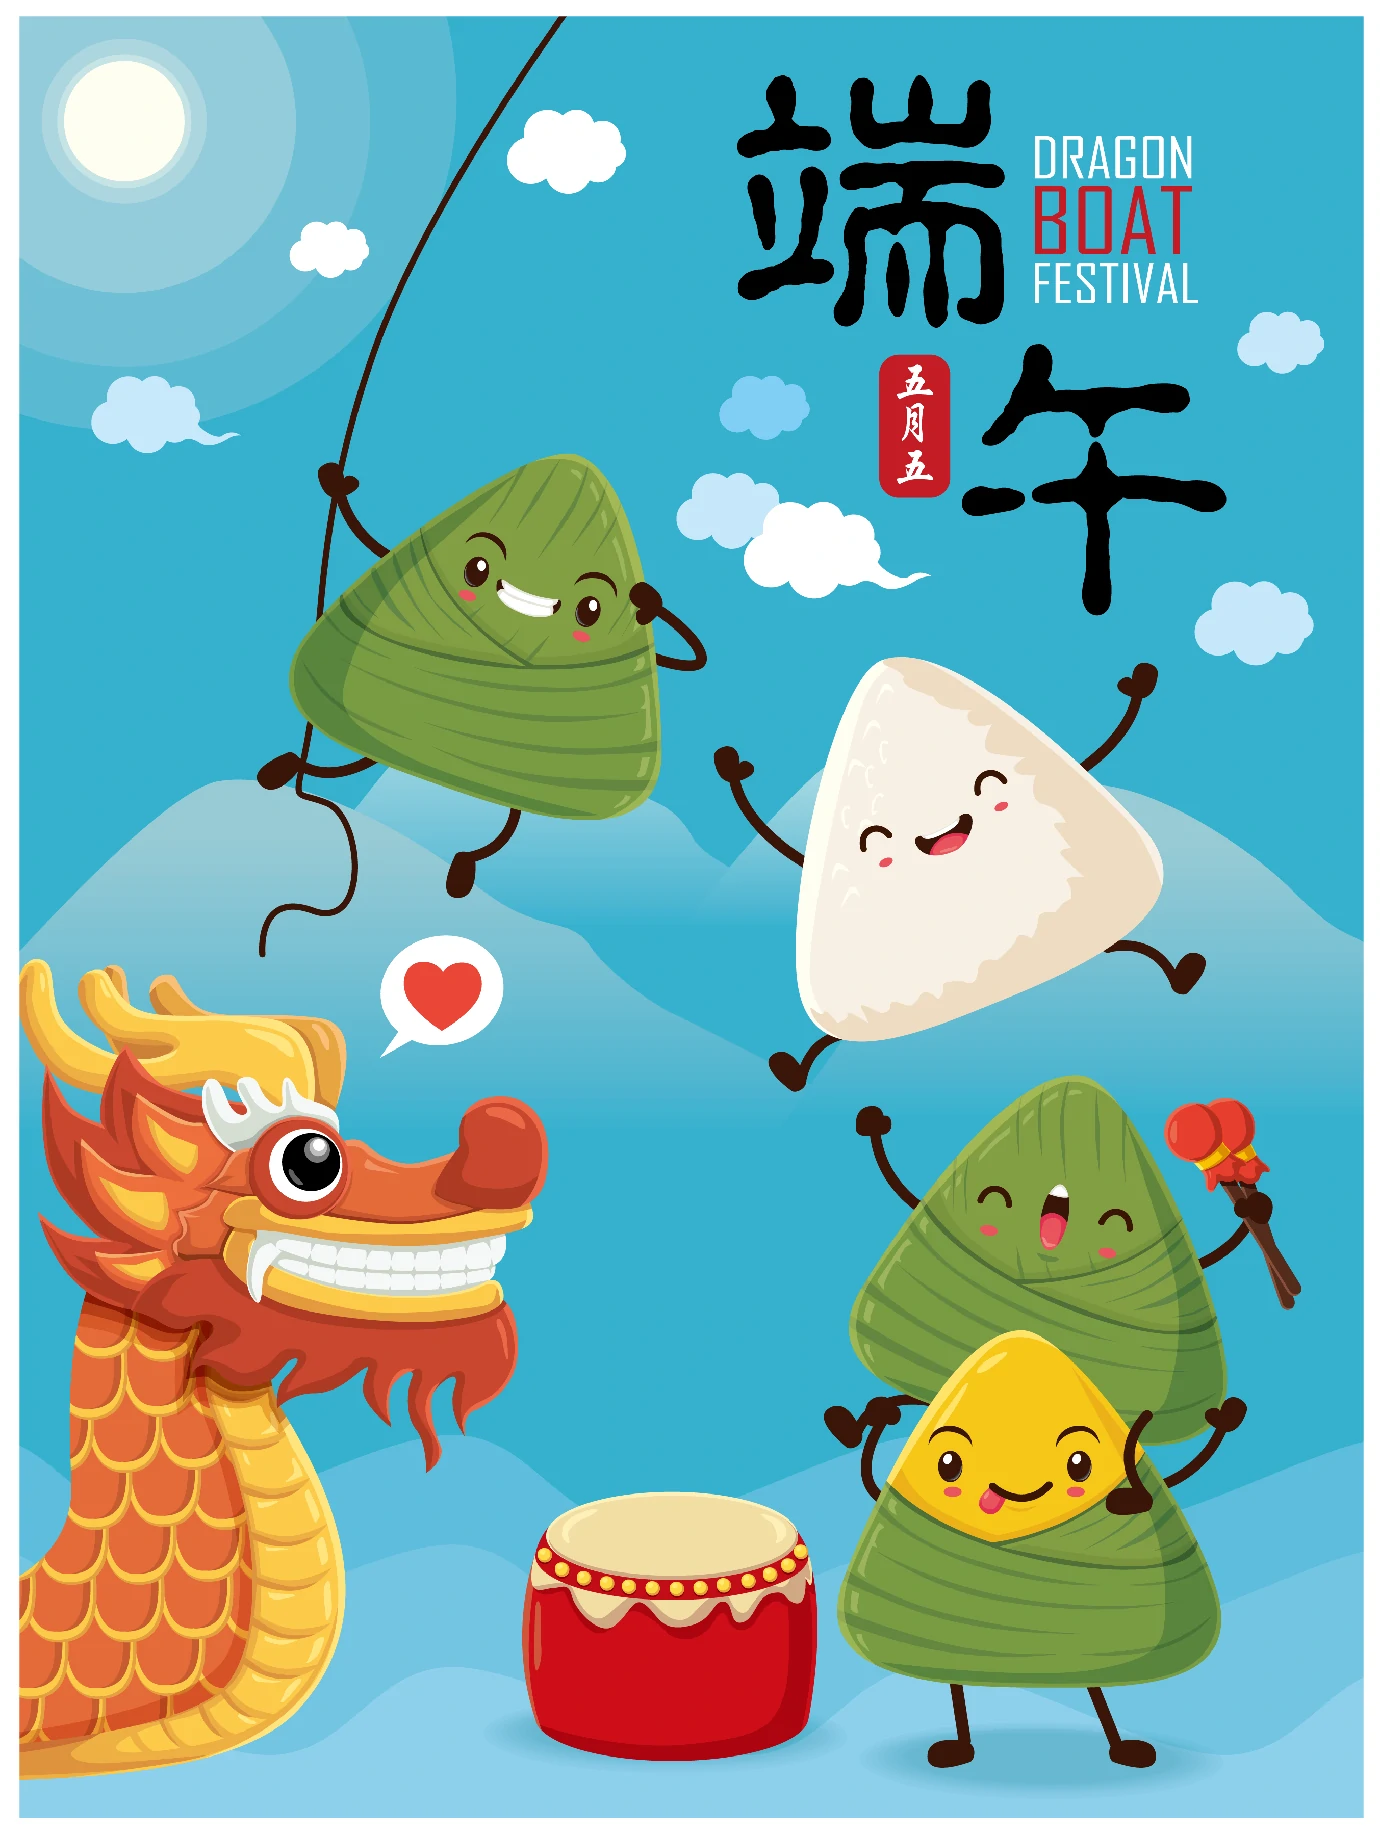 中国传统节日卡通手绘端午节赛龙舟粽子插画海报AI矢量设计素材【043】